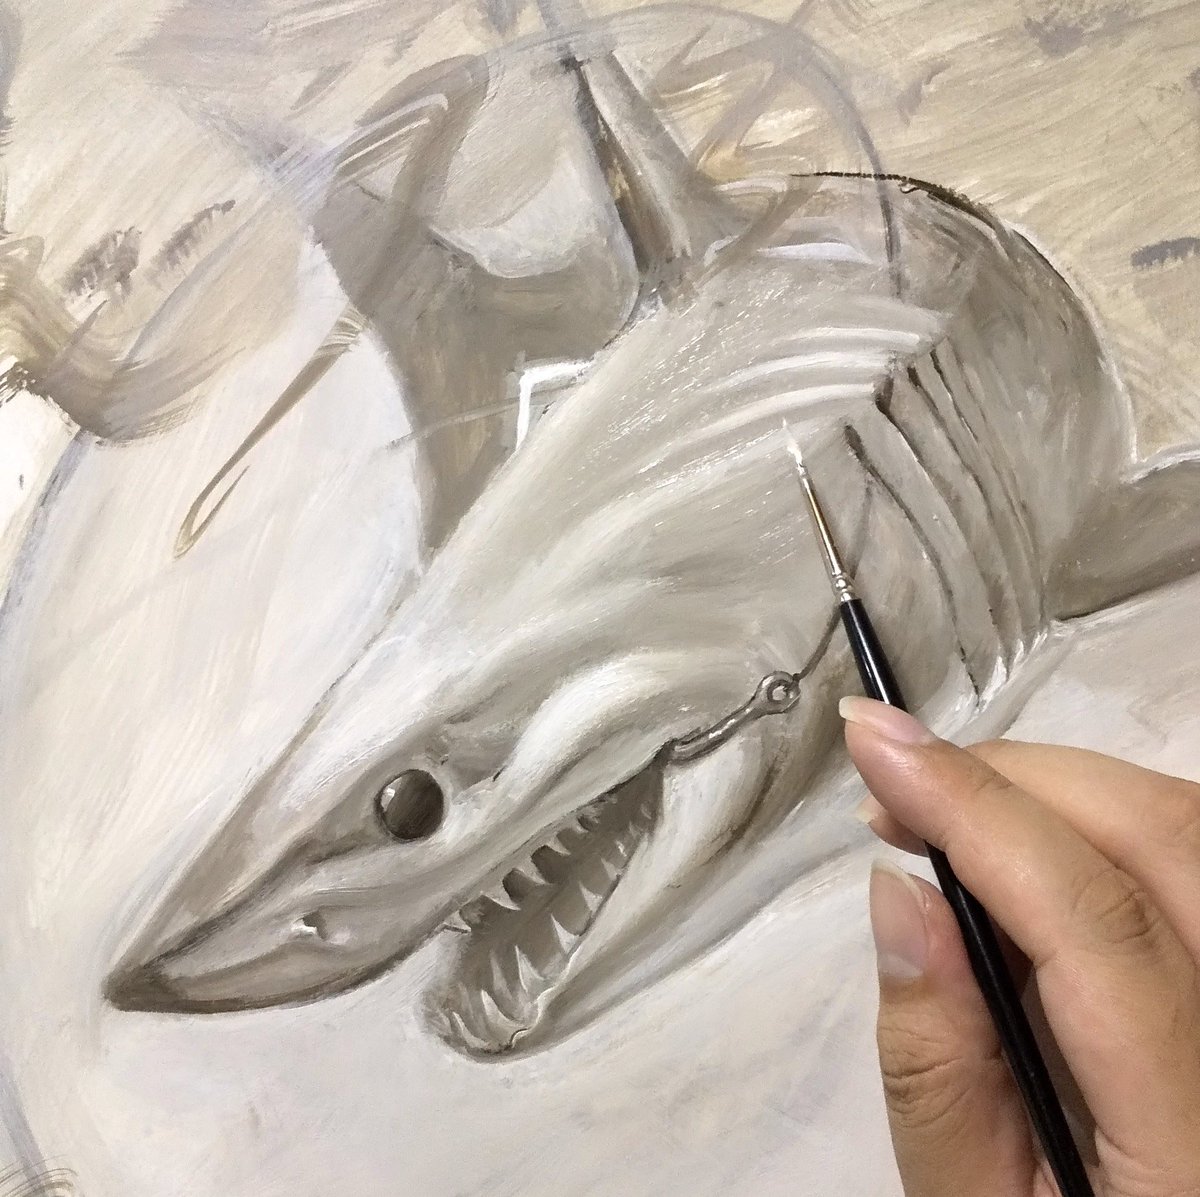 サメ田氏 サメをリアルに描くのであれば 外鰓軟骨がポイントです デッサンの基本は表面でなく構造を描く T Co Hzfnyzxrhp Twitter